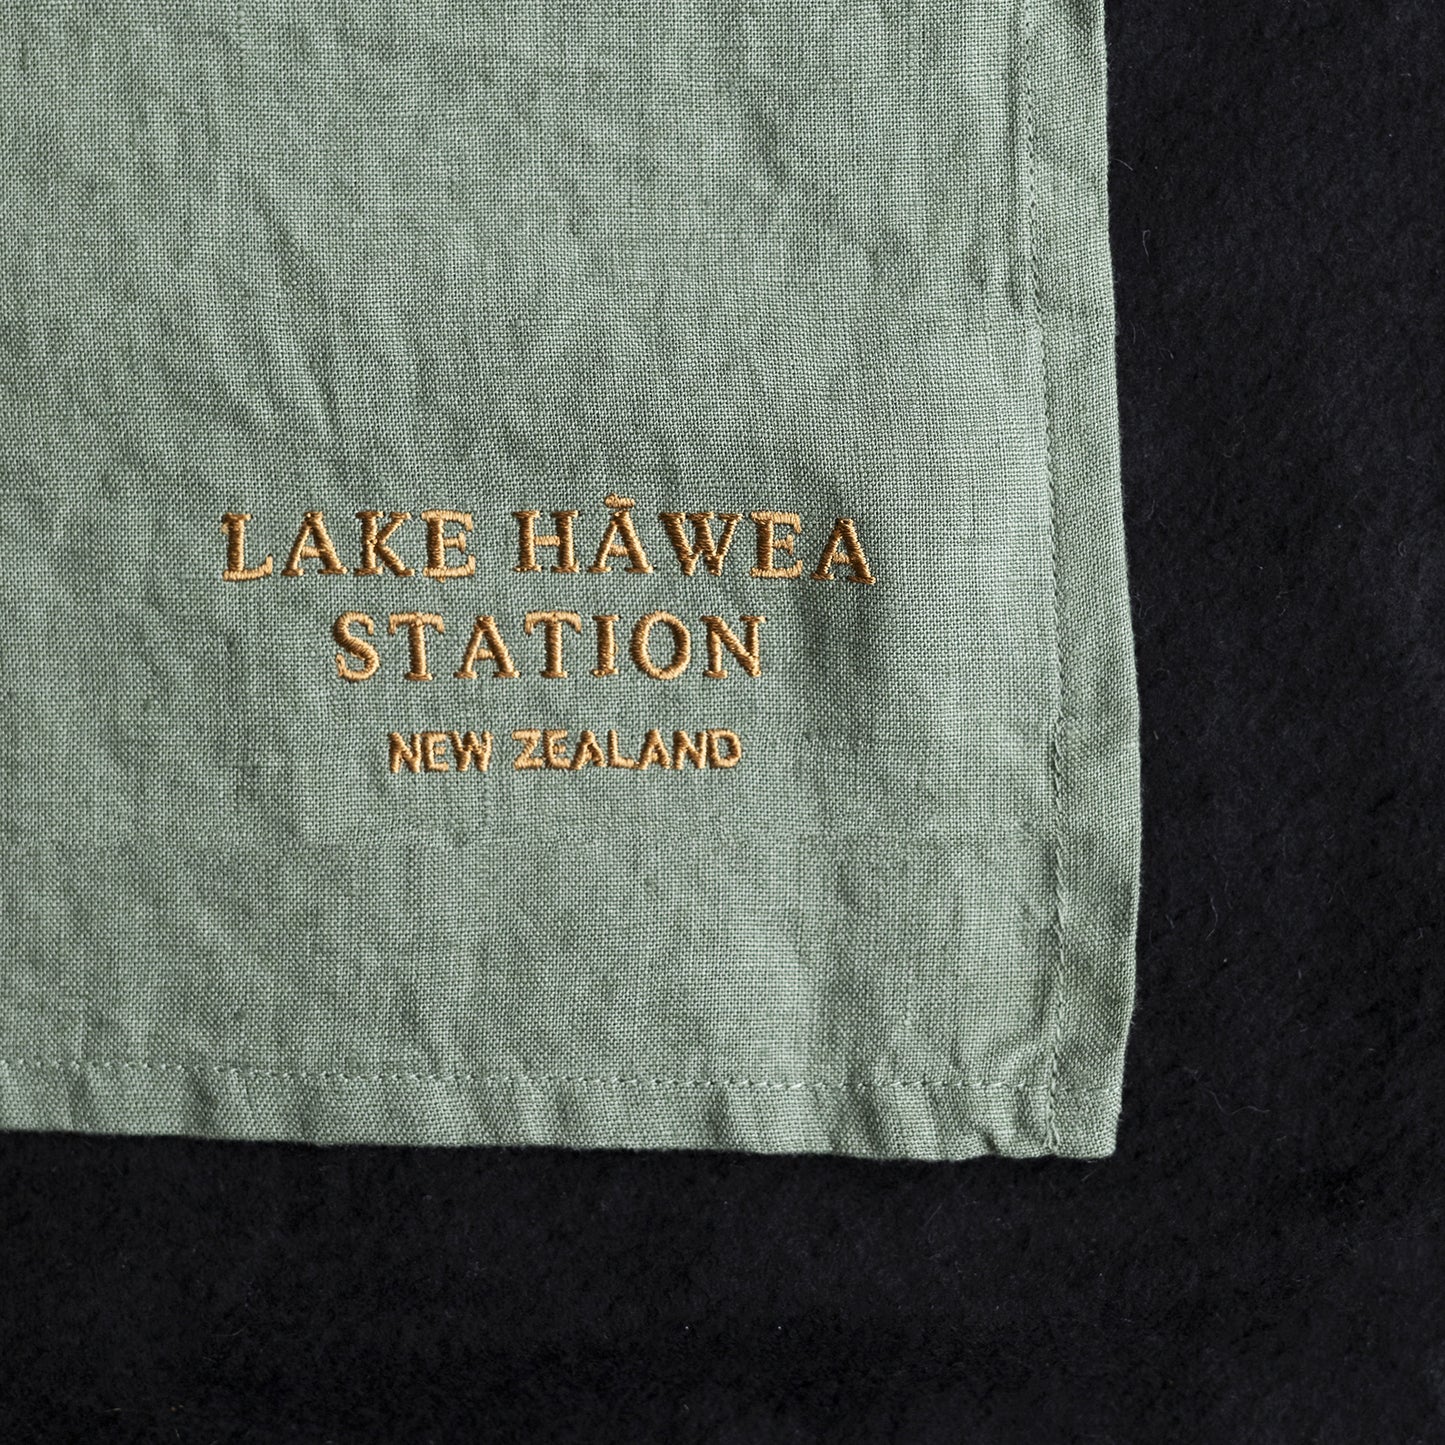 Lake Hāwea Station New Zealand tea towel